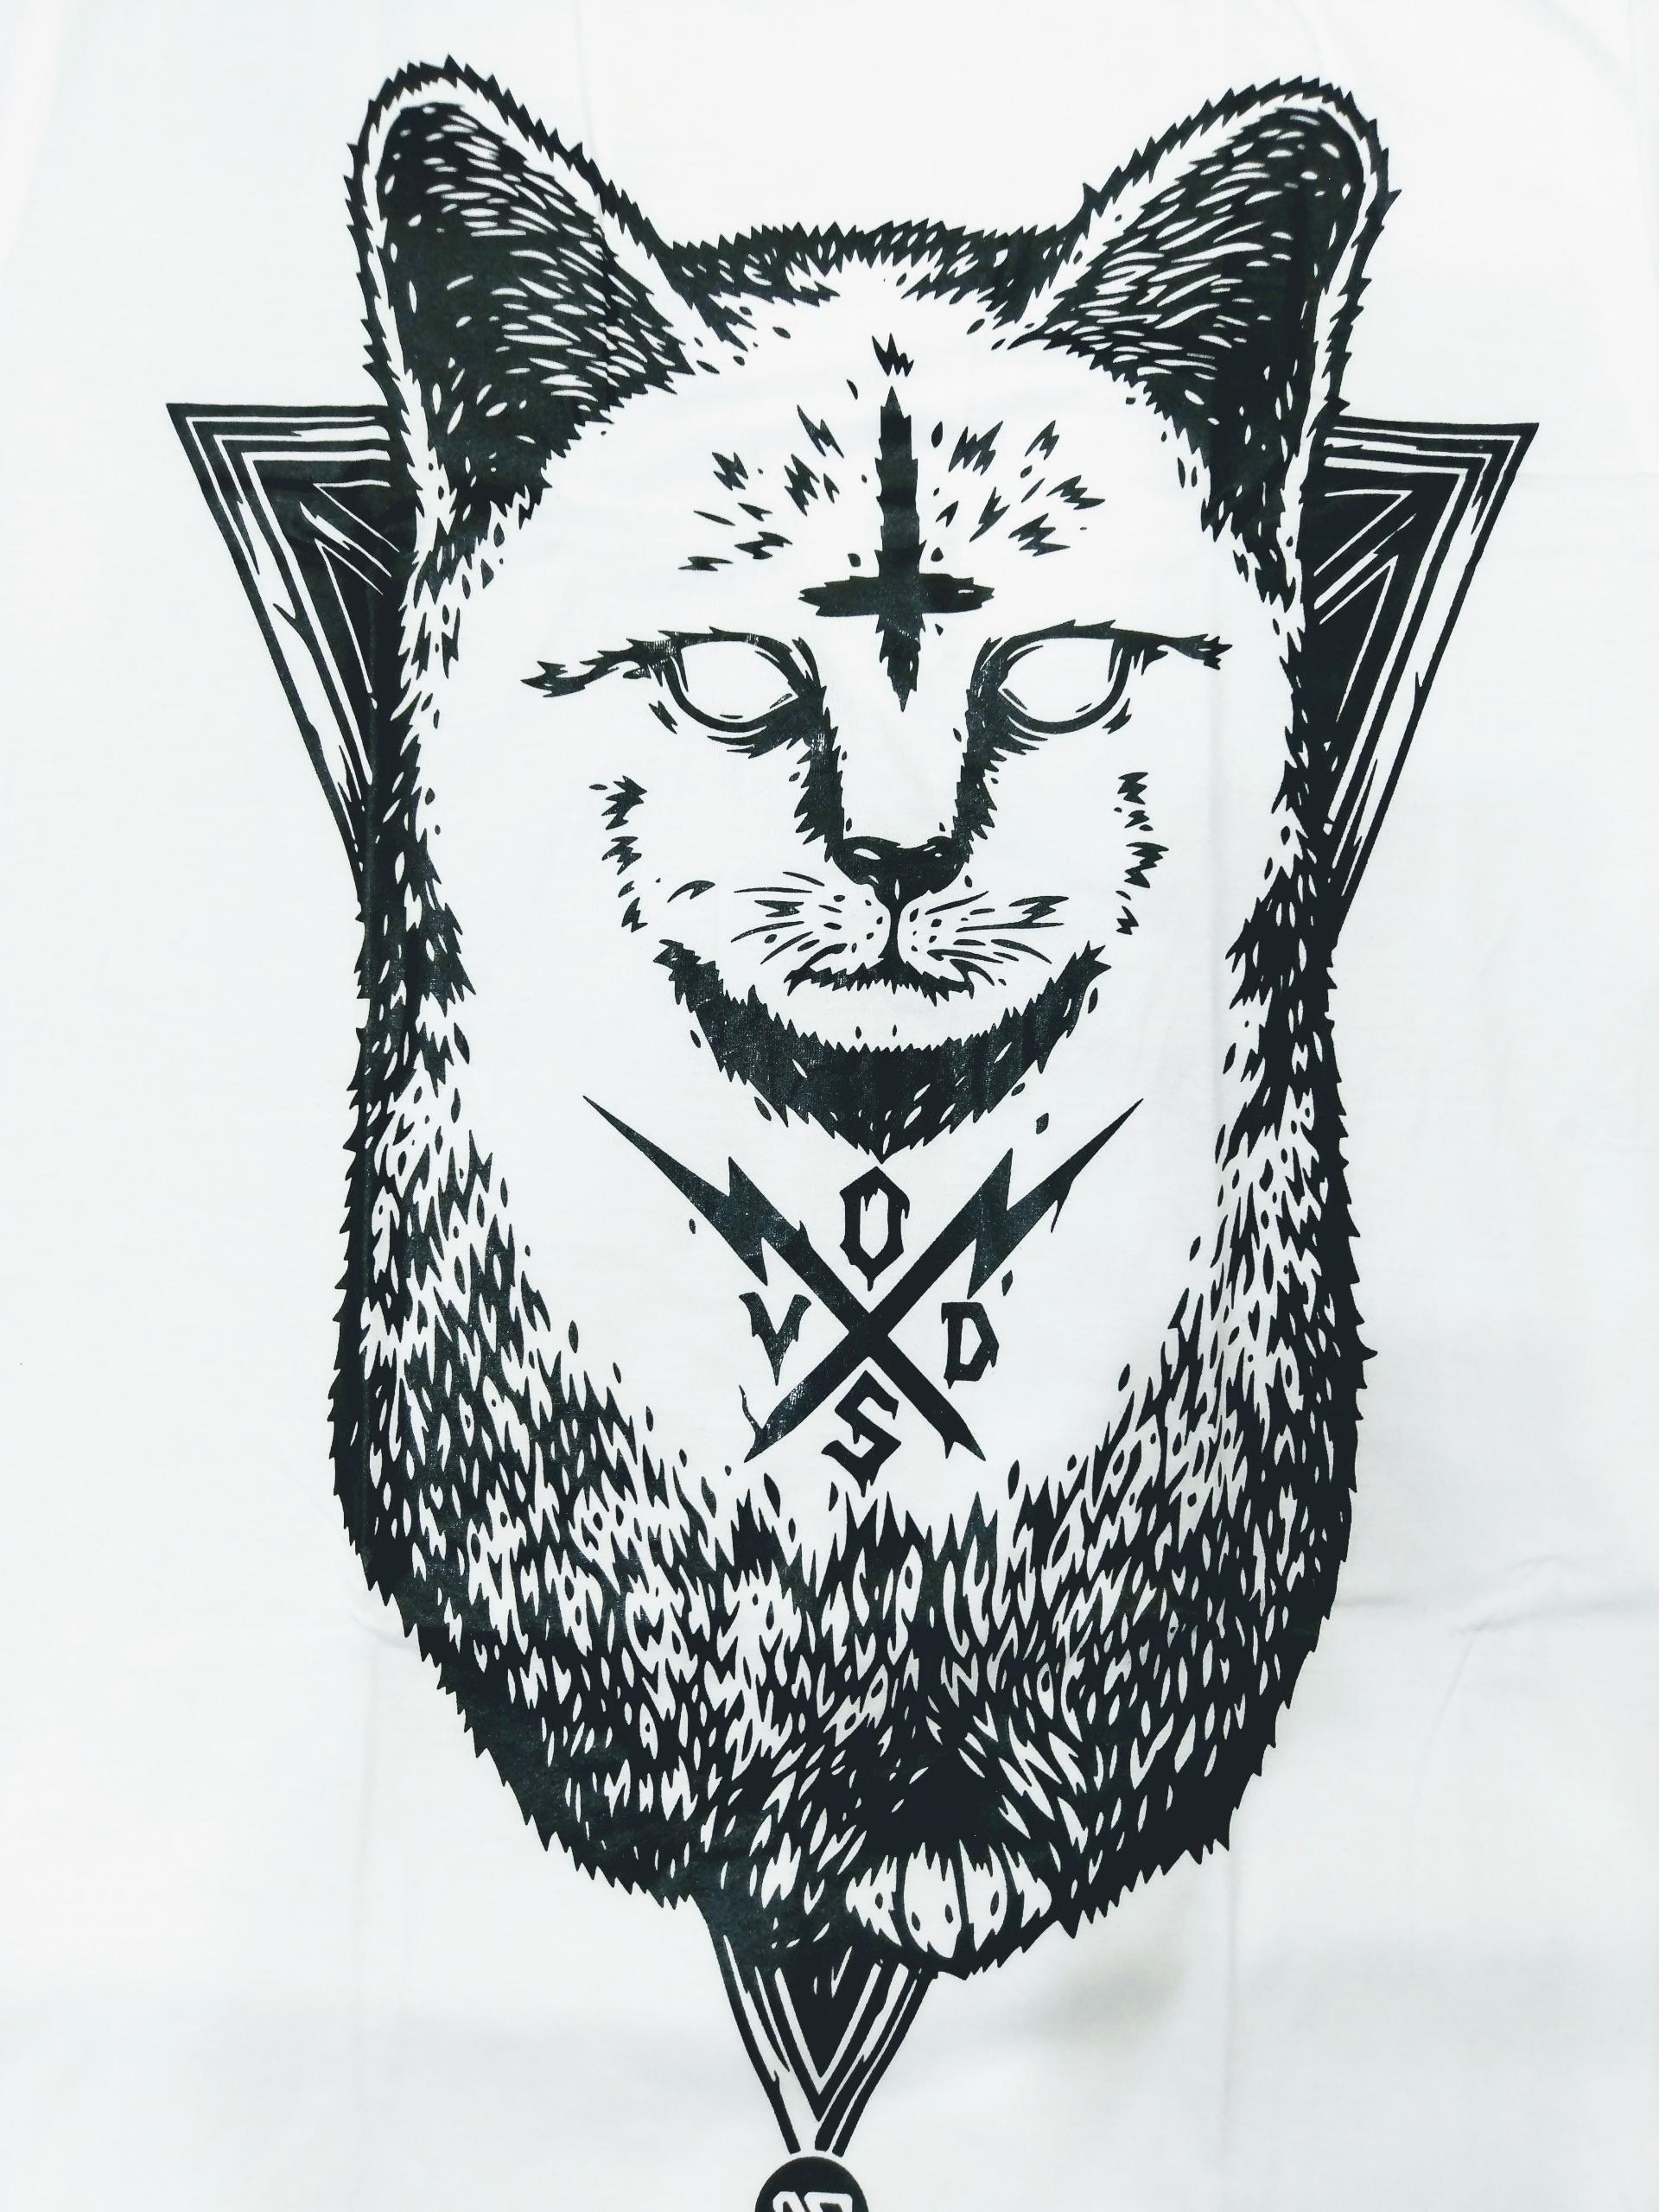 Bạn đang tìm kiếm một chiếc áo thun thú vị để mặc? Hãy đến xem chiếc áo thun in 3D mèo Ai Cập của chúng tôi. Với thiết kế độc đáo và chất lượng vô cùng tốt, nó sẽ là món đồ không thể thiếu trong bộ sưu tập của bạn.